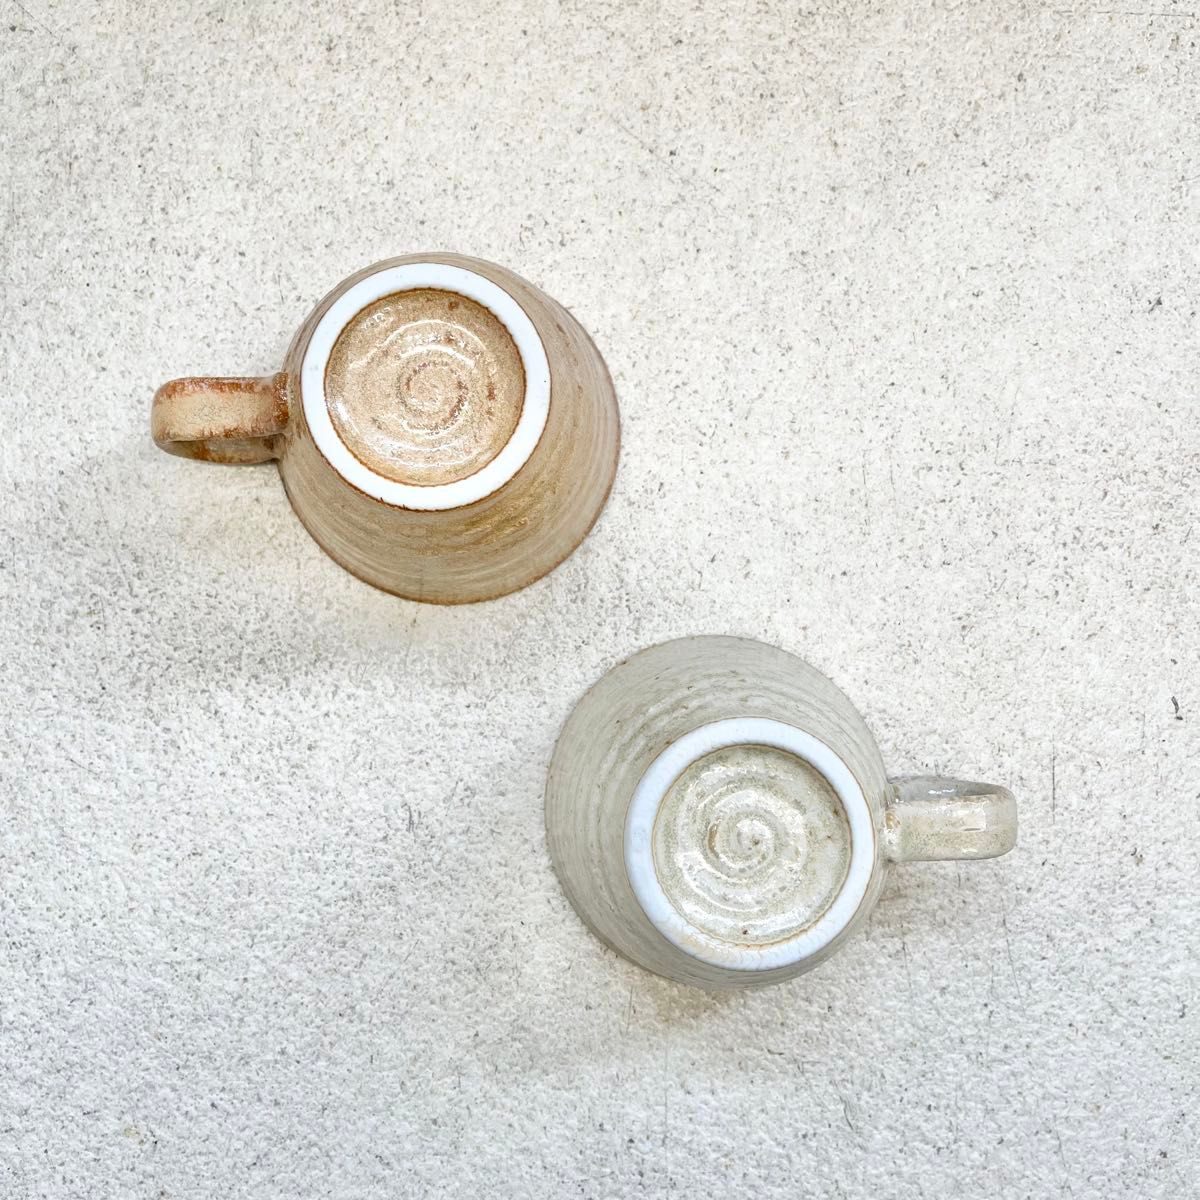 【2個セット】コーヒーカップ キャメル×ベージュ 陶器 おうちカフェ